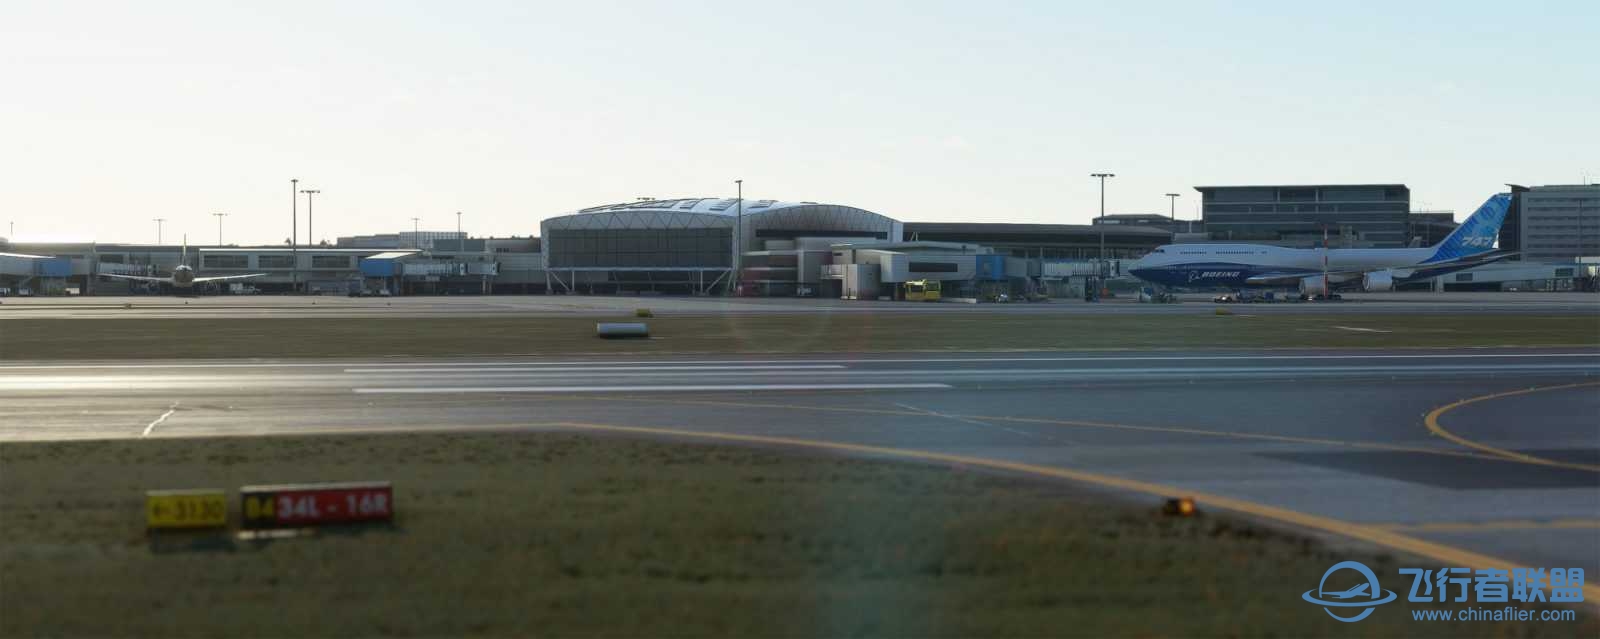 FlyTampa悉尼机场预览和加入Orbx合作计划-1436 